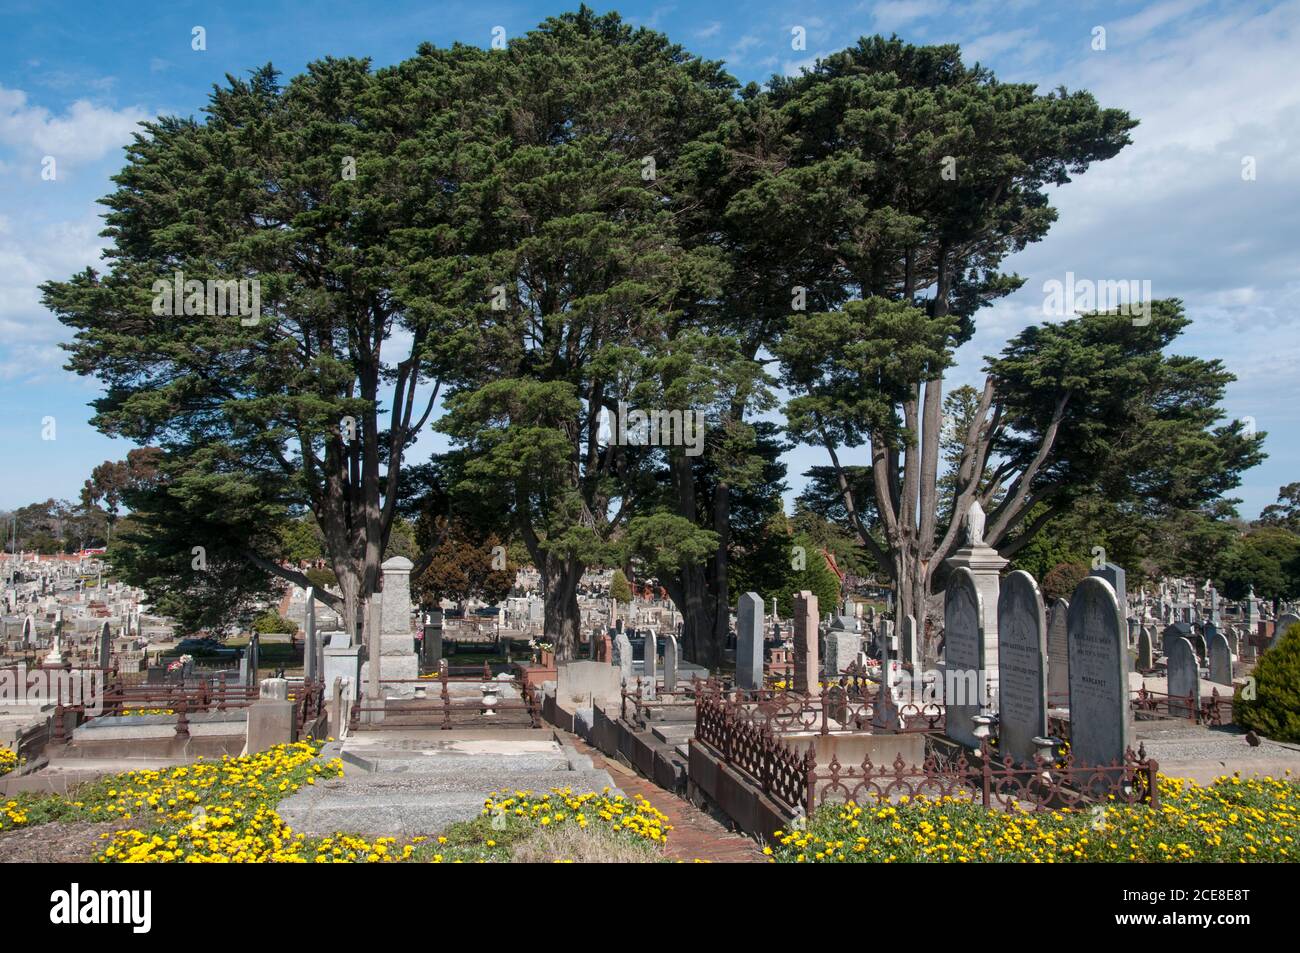 Fondato nel 1854, il cimitero generale di Brighton, in stile giardino, a Caulfield South è uno dei cimiteri più antichi e significativi di Melbourne Foto Stock